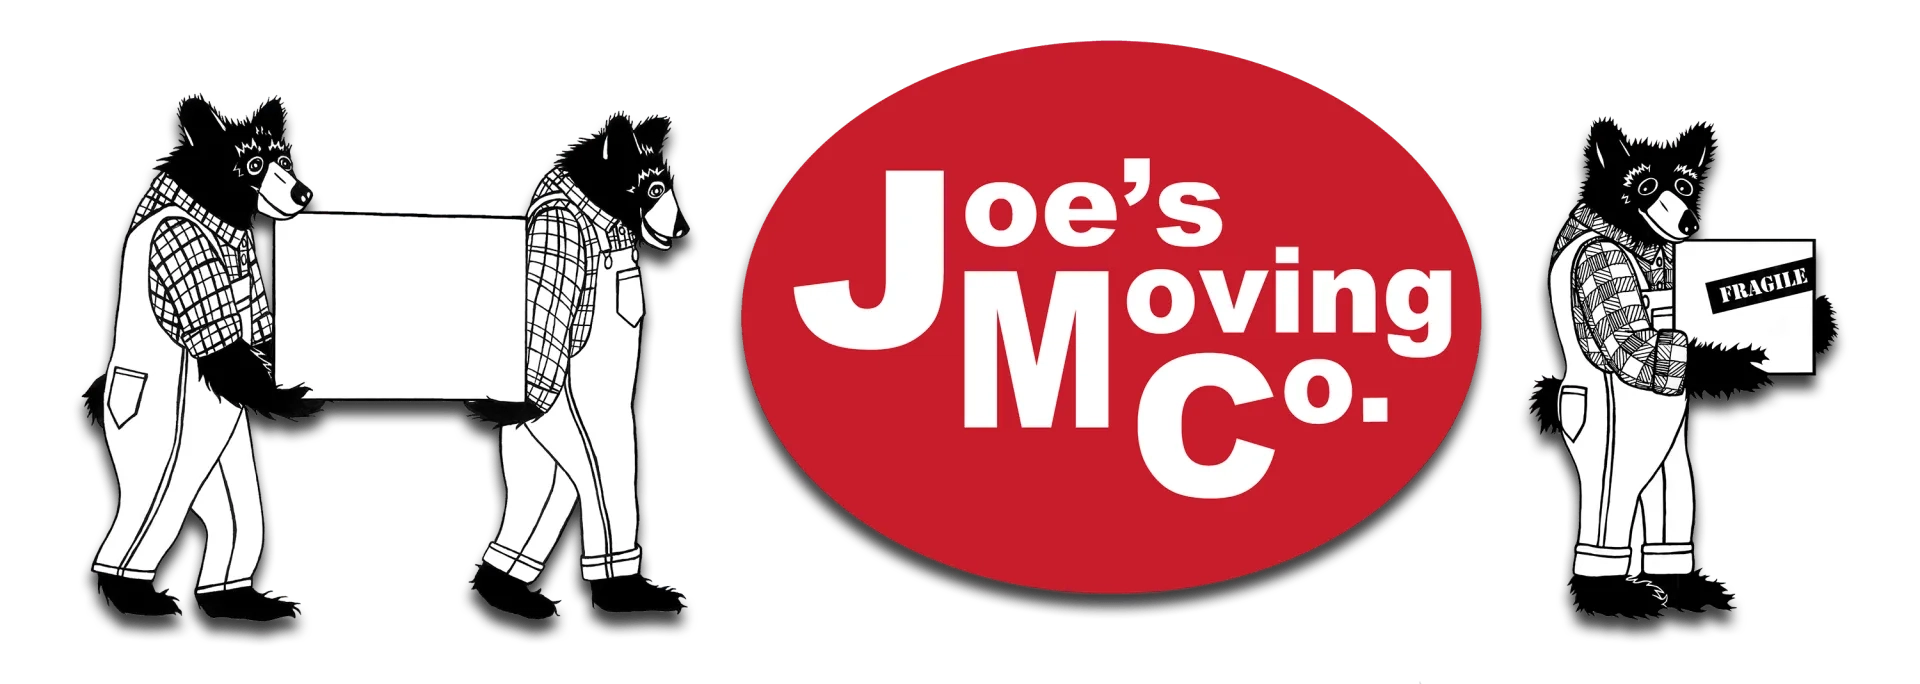 Joe's Moving Co. Logo